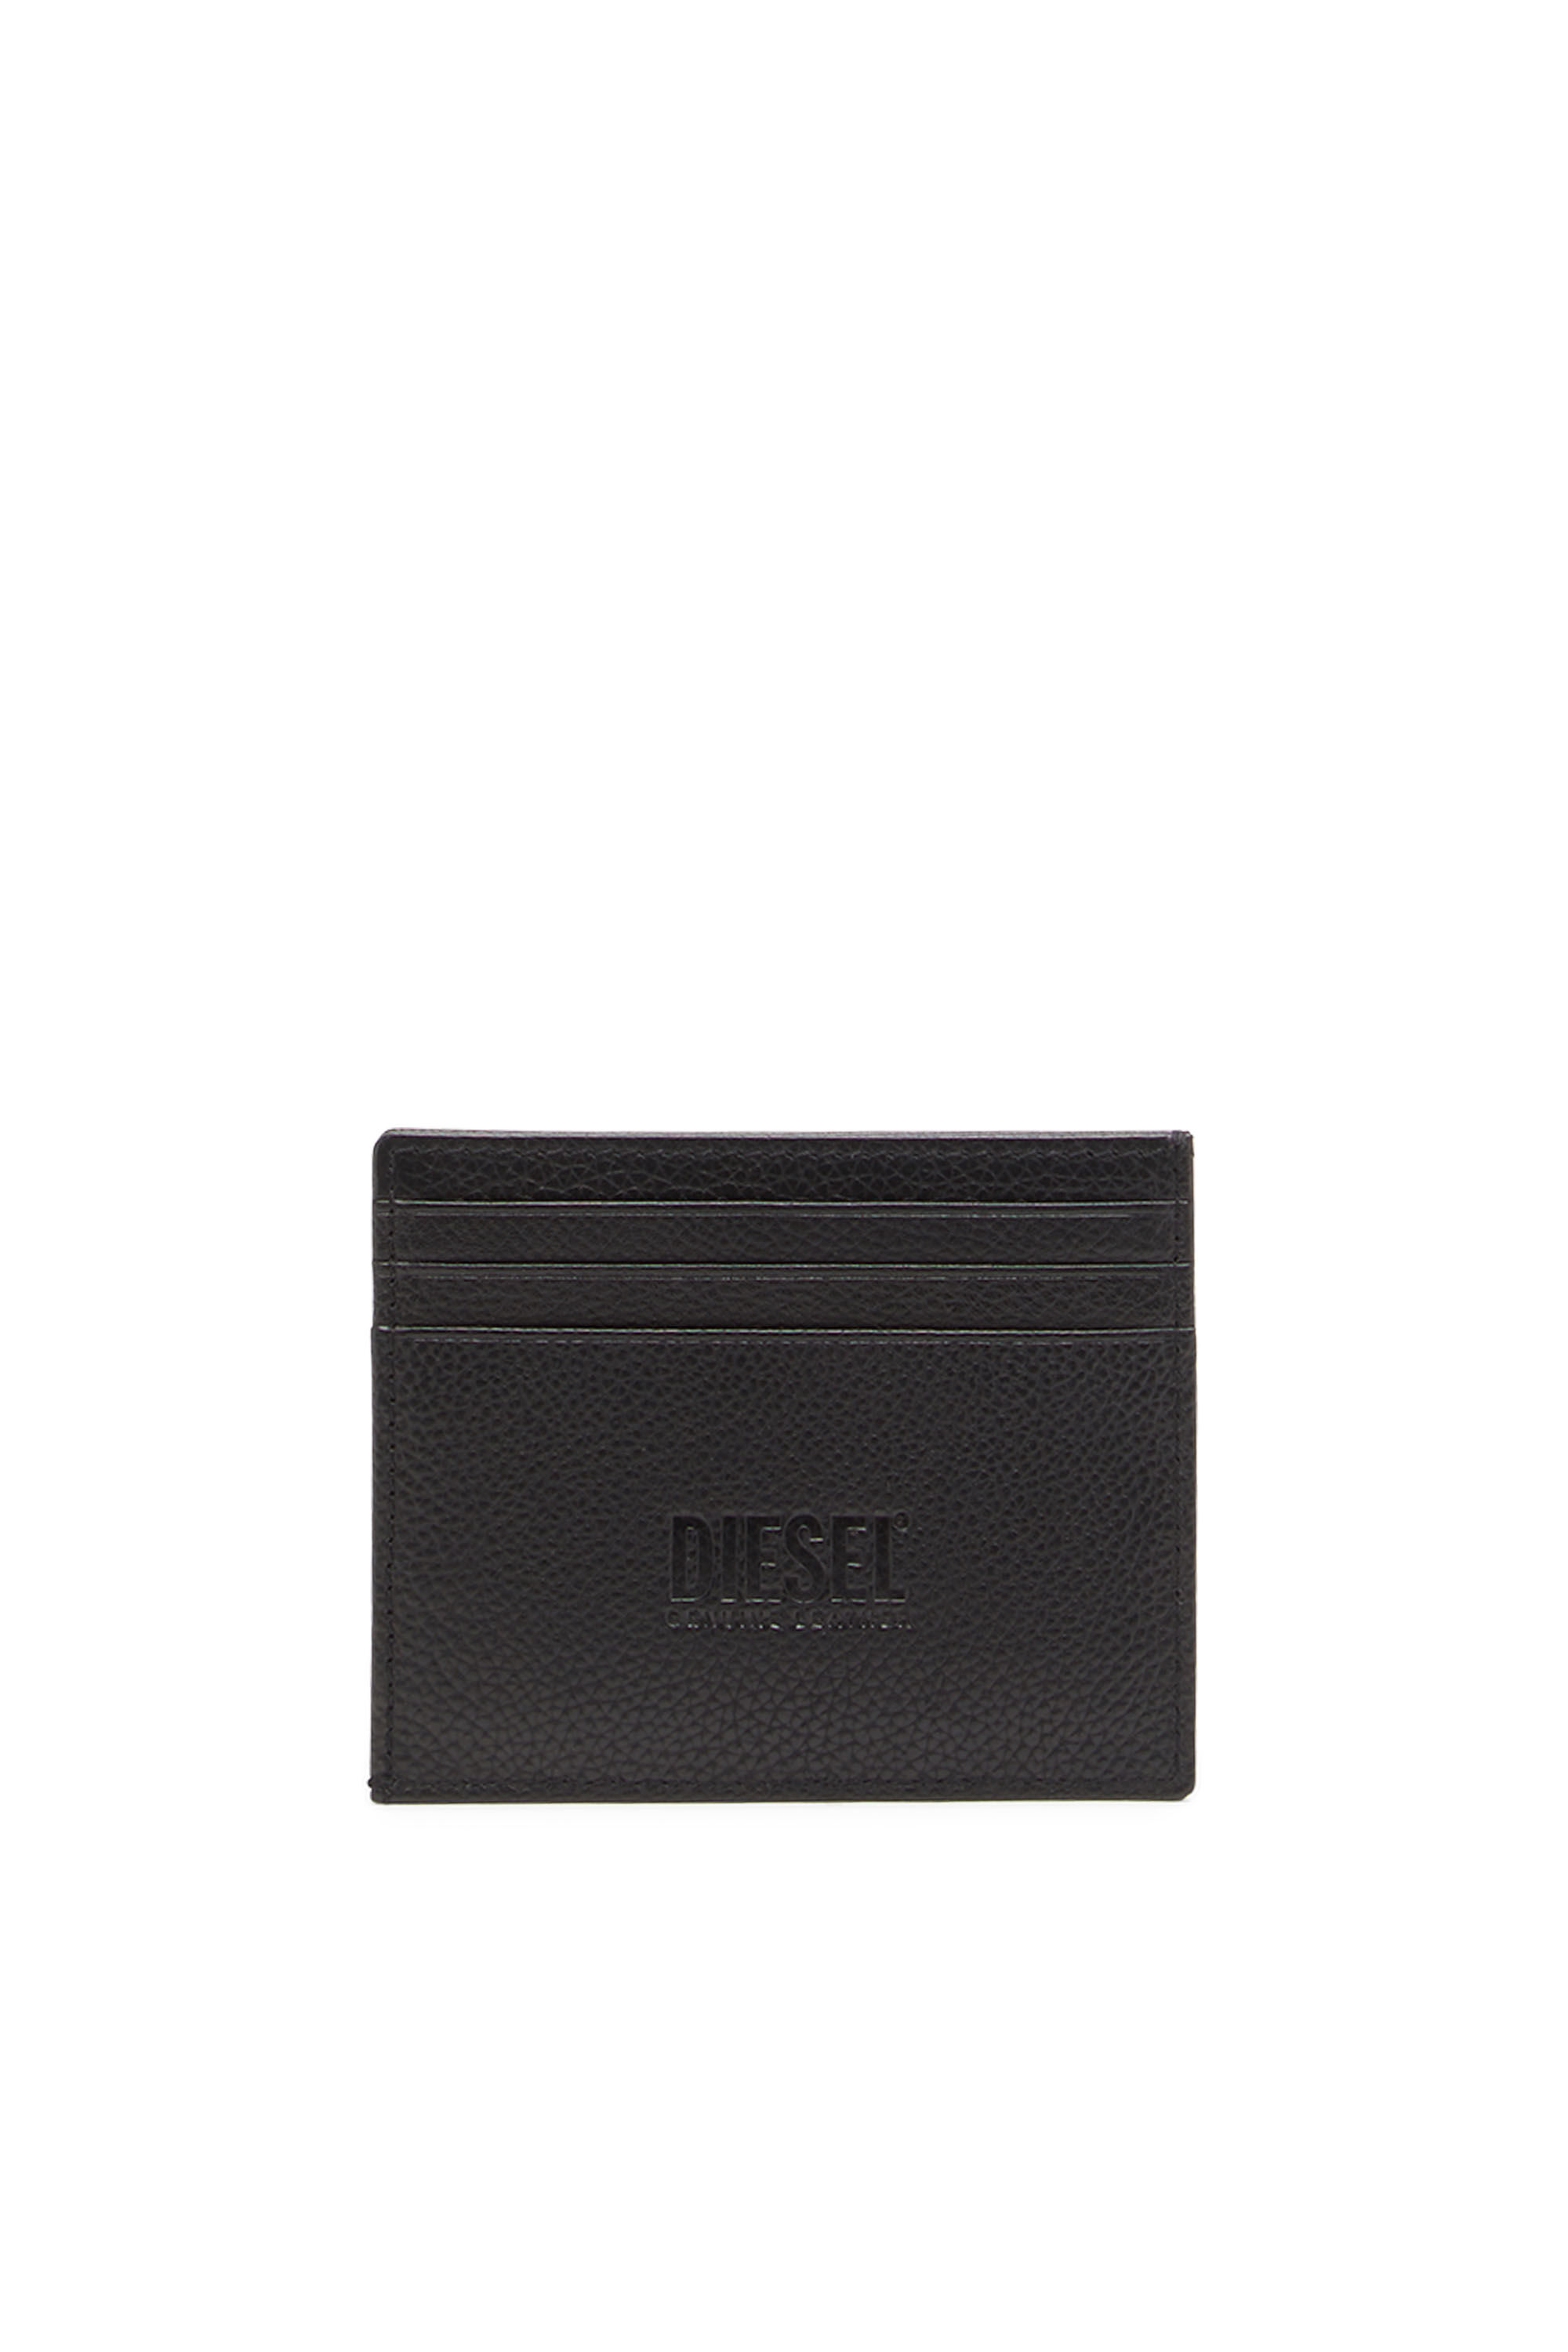 Diesel - CARD CASE, Black - Image 2